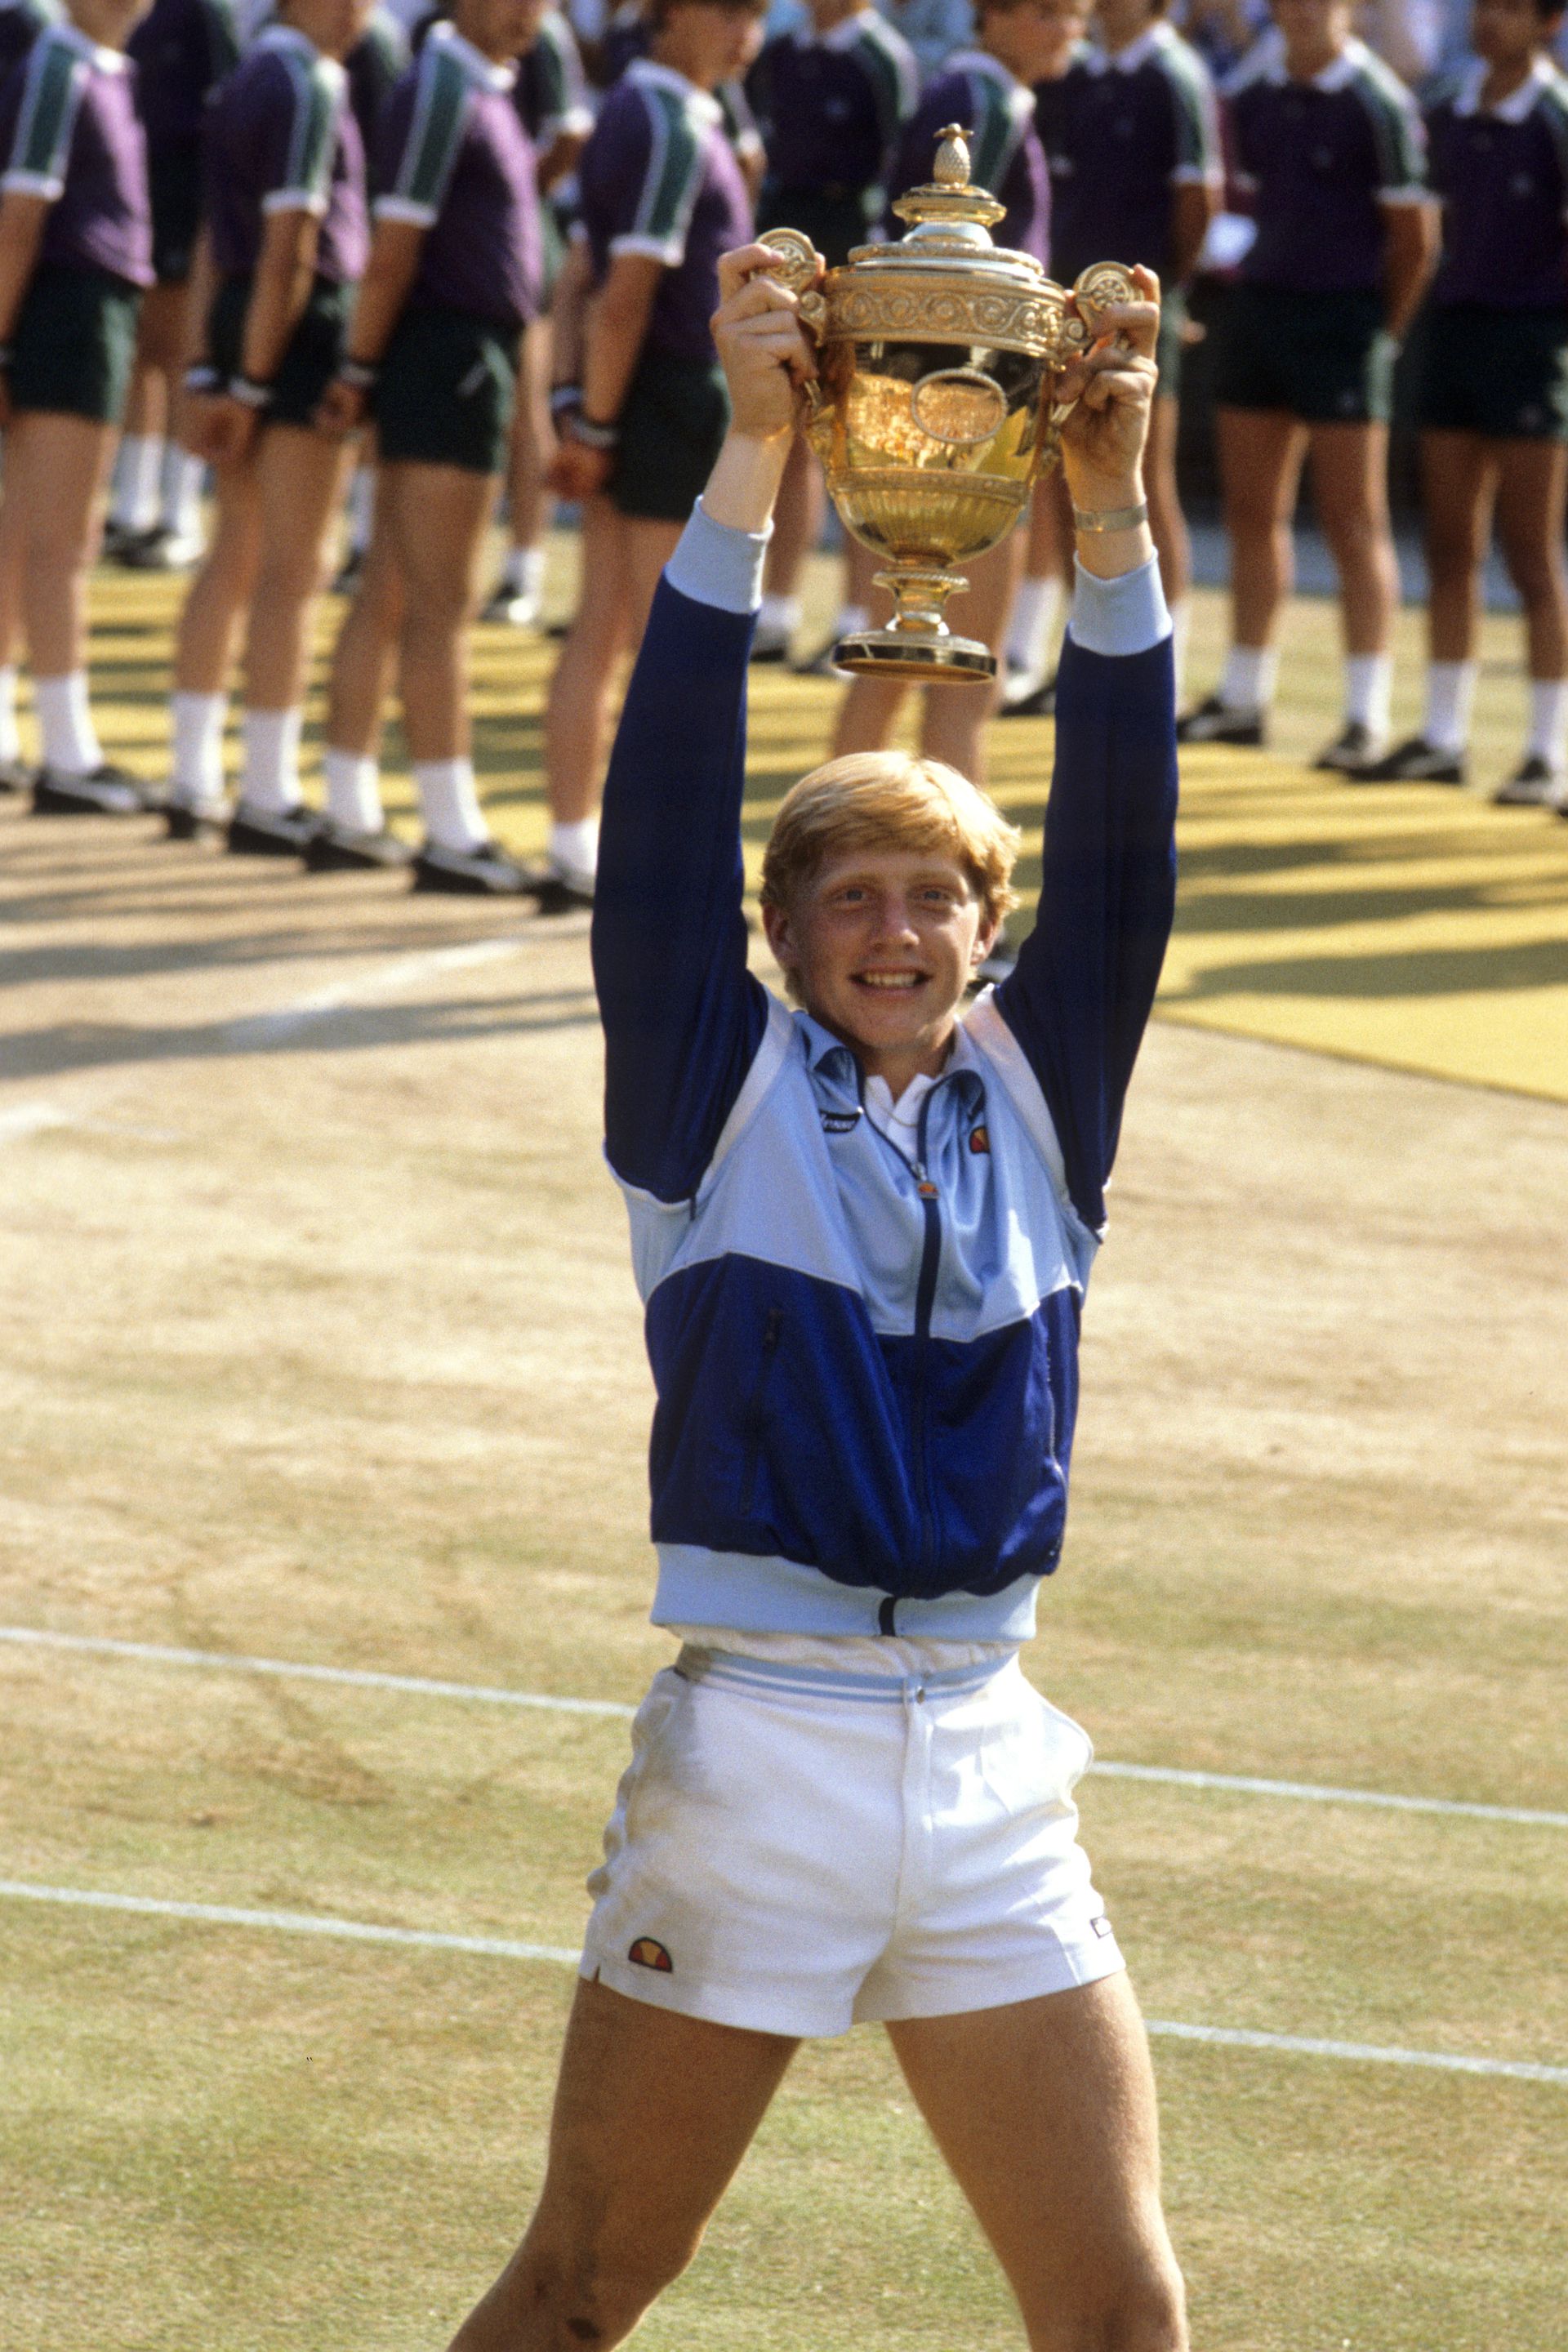 Becker 17 évesen nyert először Wimbledonban, a tenisztrófeáit is eltűntette, így azok elárverezésével sem csökkentette az adósságait/Getty Images